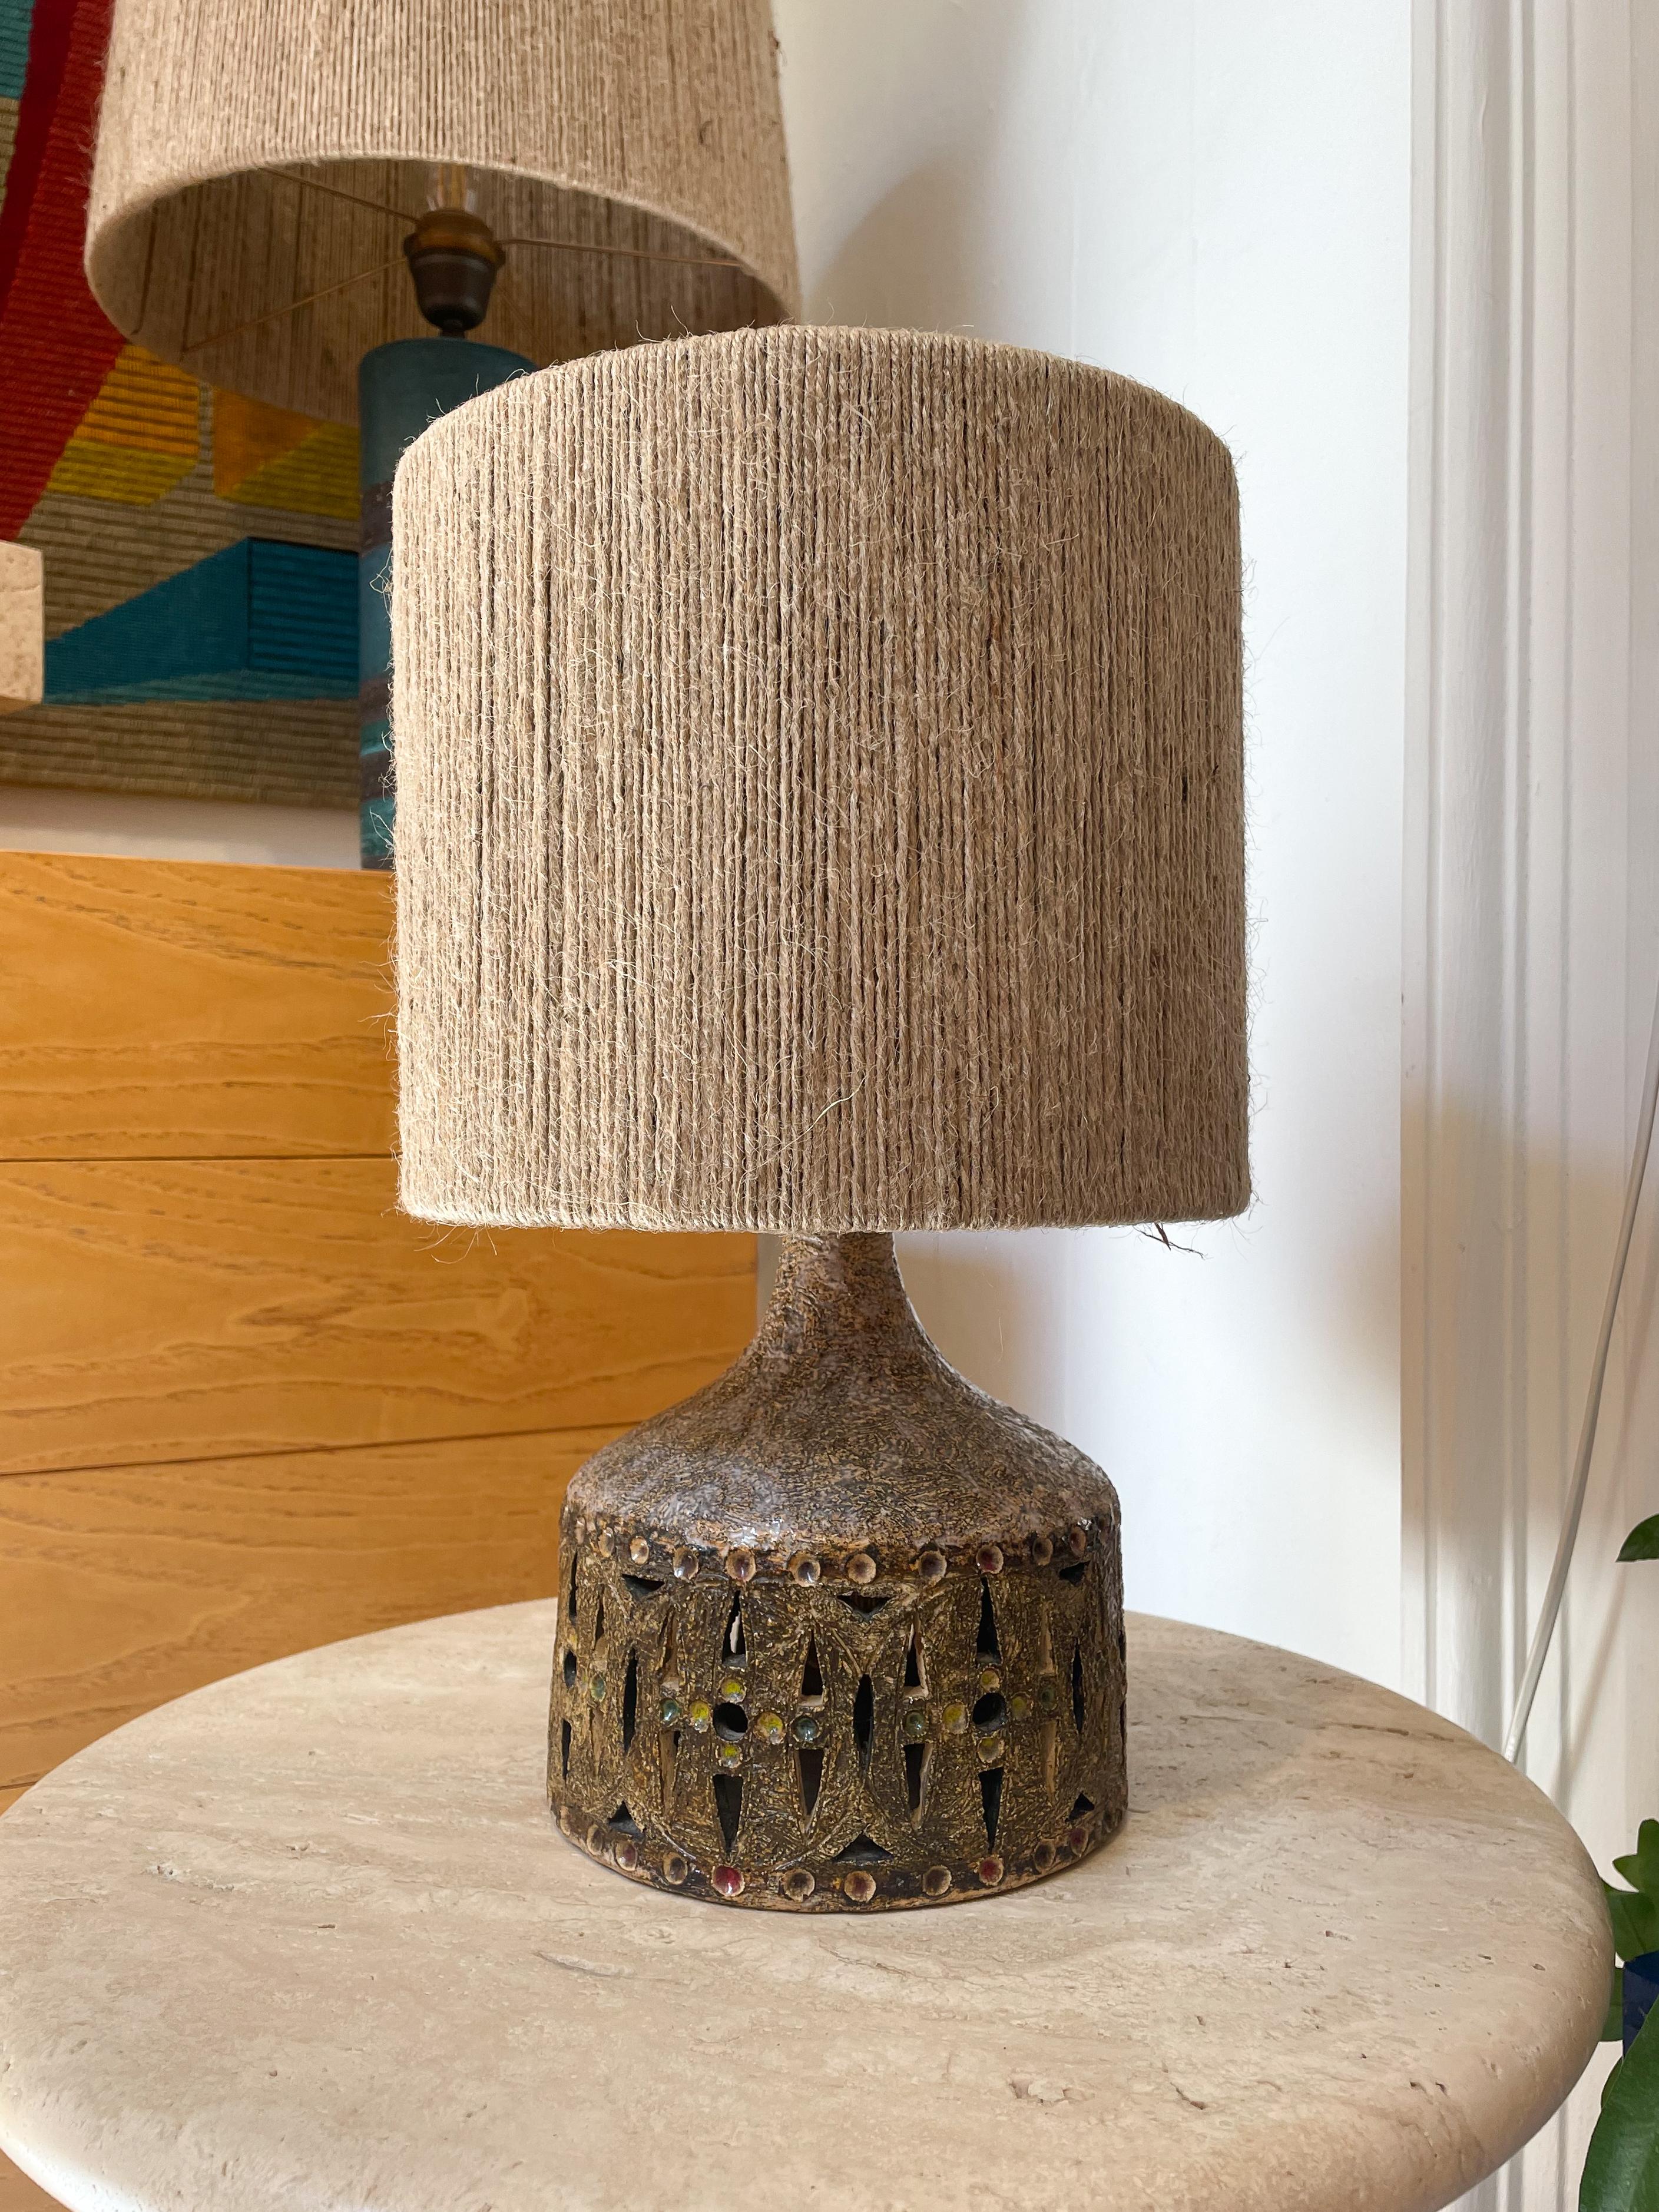 Moderne Keramik-Tischlampe im Stil von Georges Pelletier, 1960er Jahre.